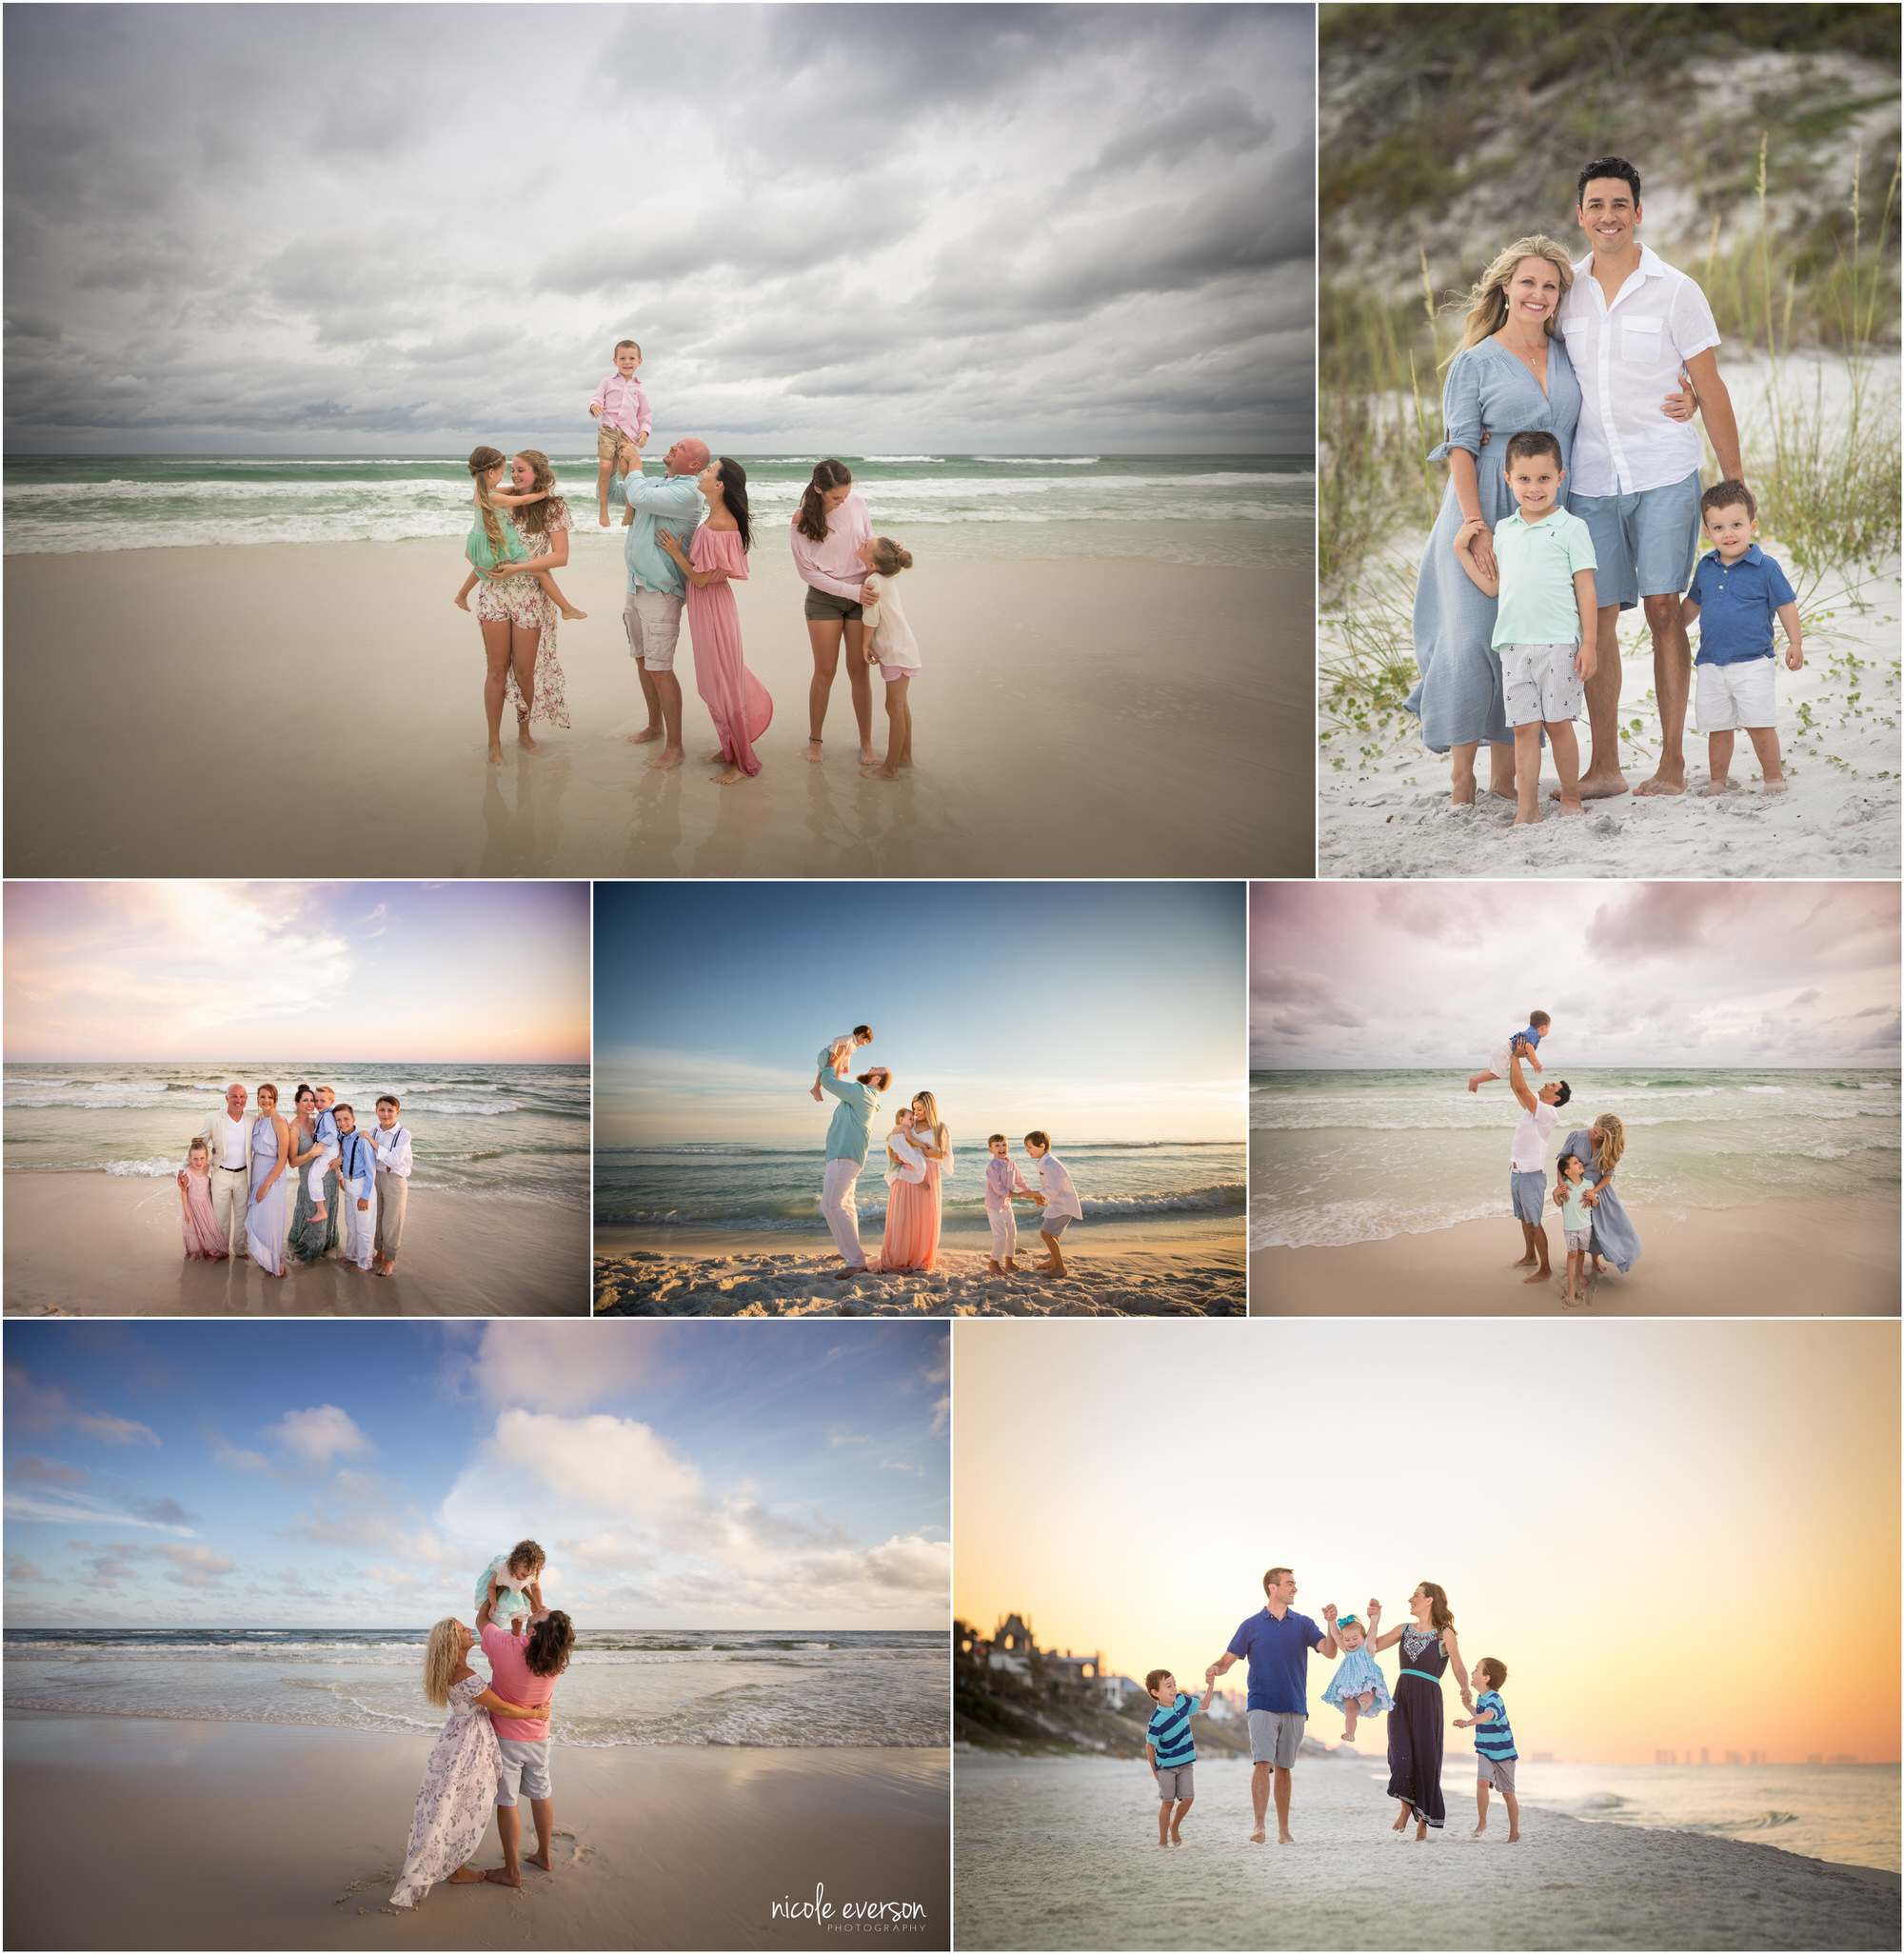 Destin photographer Nicole Everson Photography photographs families on the beach all over Destin